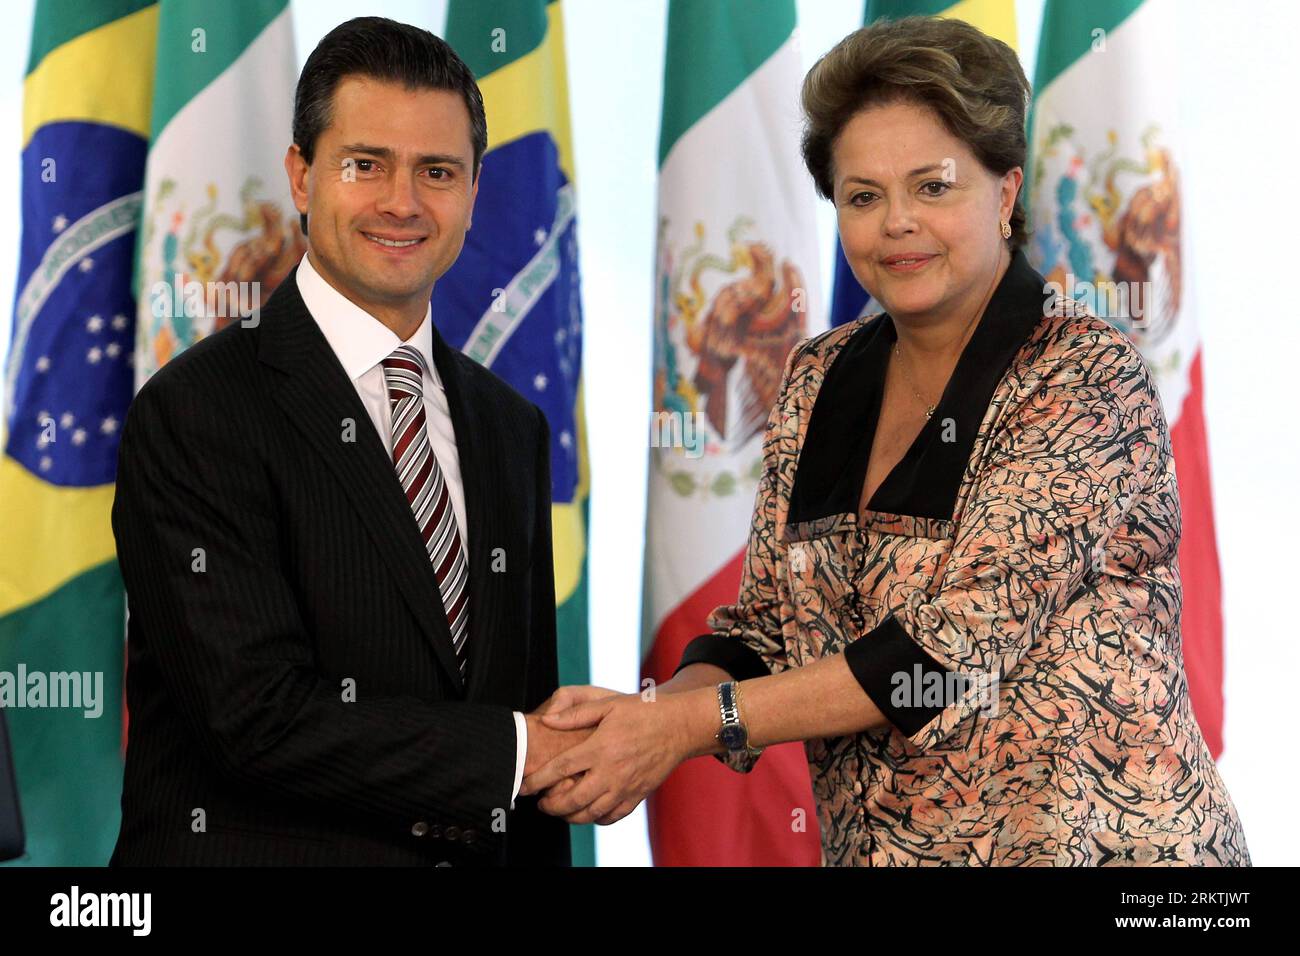 Bildnummer : 58496115 Datum : 20.09.2012 Copyright : imago/Xinhua BRASILIA, 20 septembre 2012 (Xinhua) -- la présidente brésilienne Dilma Rousseff (à droite) rencontre le président mexicain élu Enrique Pena Nieto au Palais Planalto à Brasilia, Brésil, le 20 septembre 2012. (Xinhua/Agencia Estado) (ae) (mp) (ce) BRASILIA-MEXICO-POLITICS-VISIT PUBLICATIONxNOTxINxCHN Politik people premiumd x0x xac 2012 quer 58496115 Date 20 09 2012 Copyright Imago XINHUA Brasilia sept 20 2012 la Présidente brésilienne DE XINHUA Dilma Rousseff rencontre le Président MEXICAIN élu Enrique Pena Nieto AU Palais Plan Alto à B. Banque D'Images